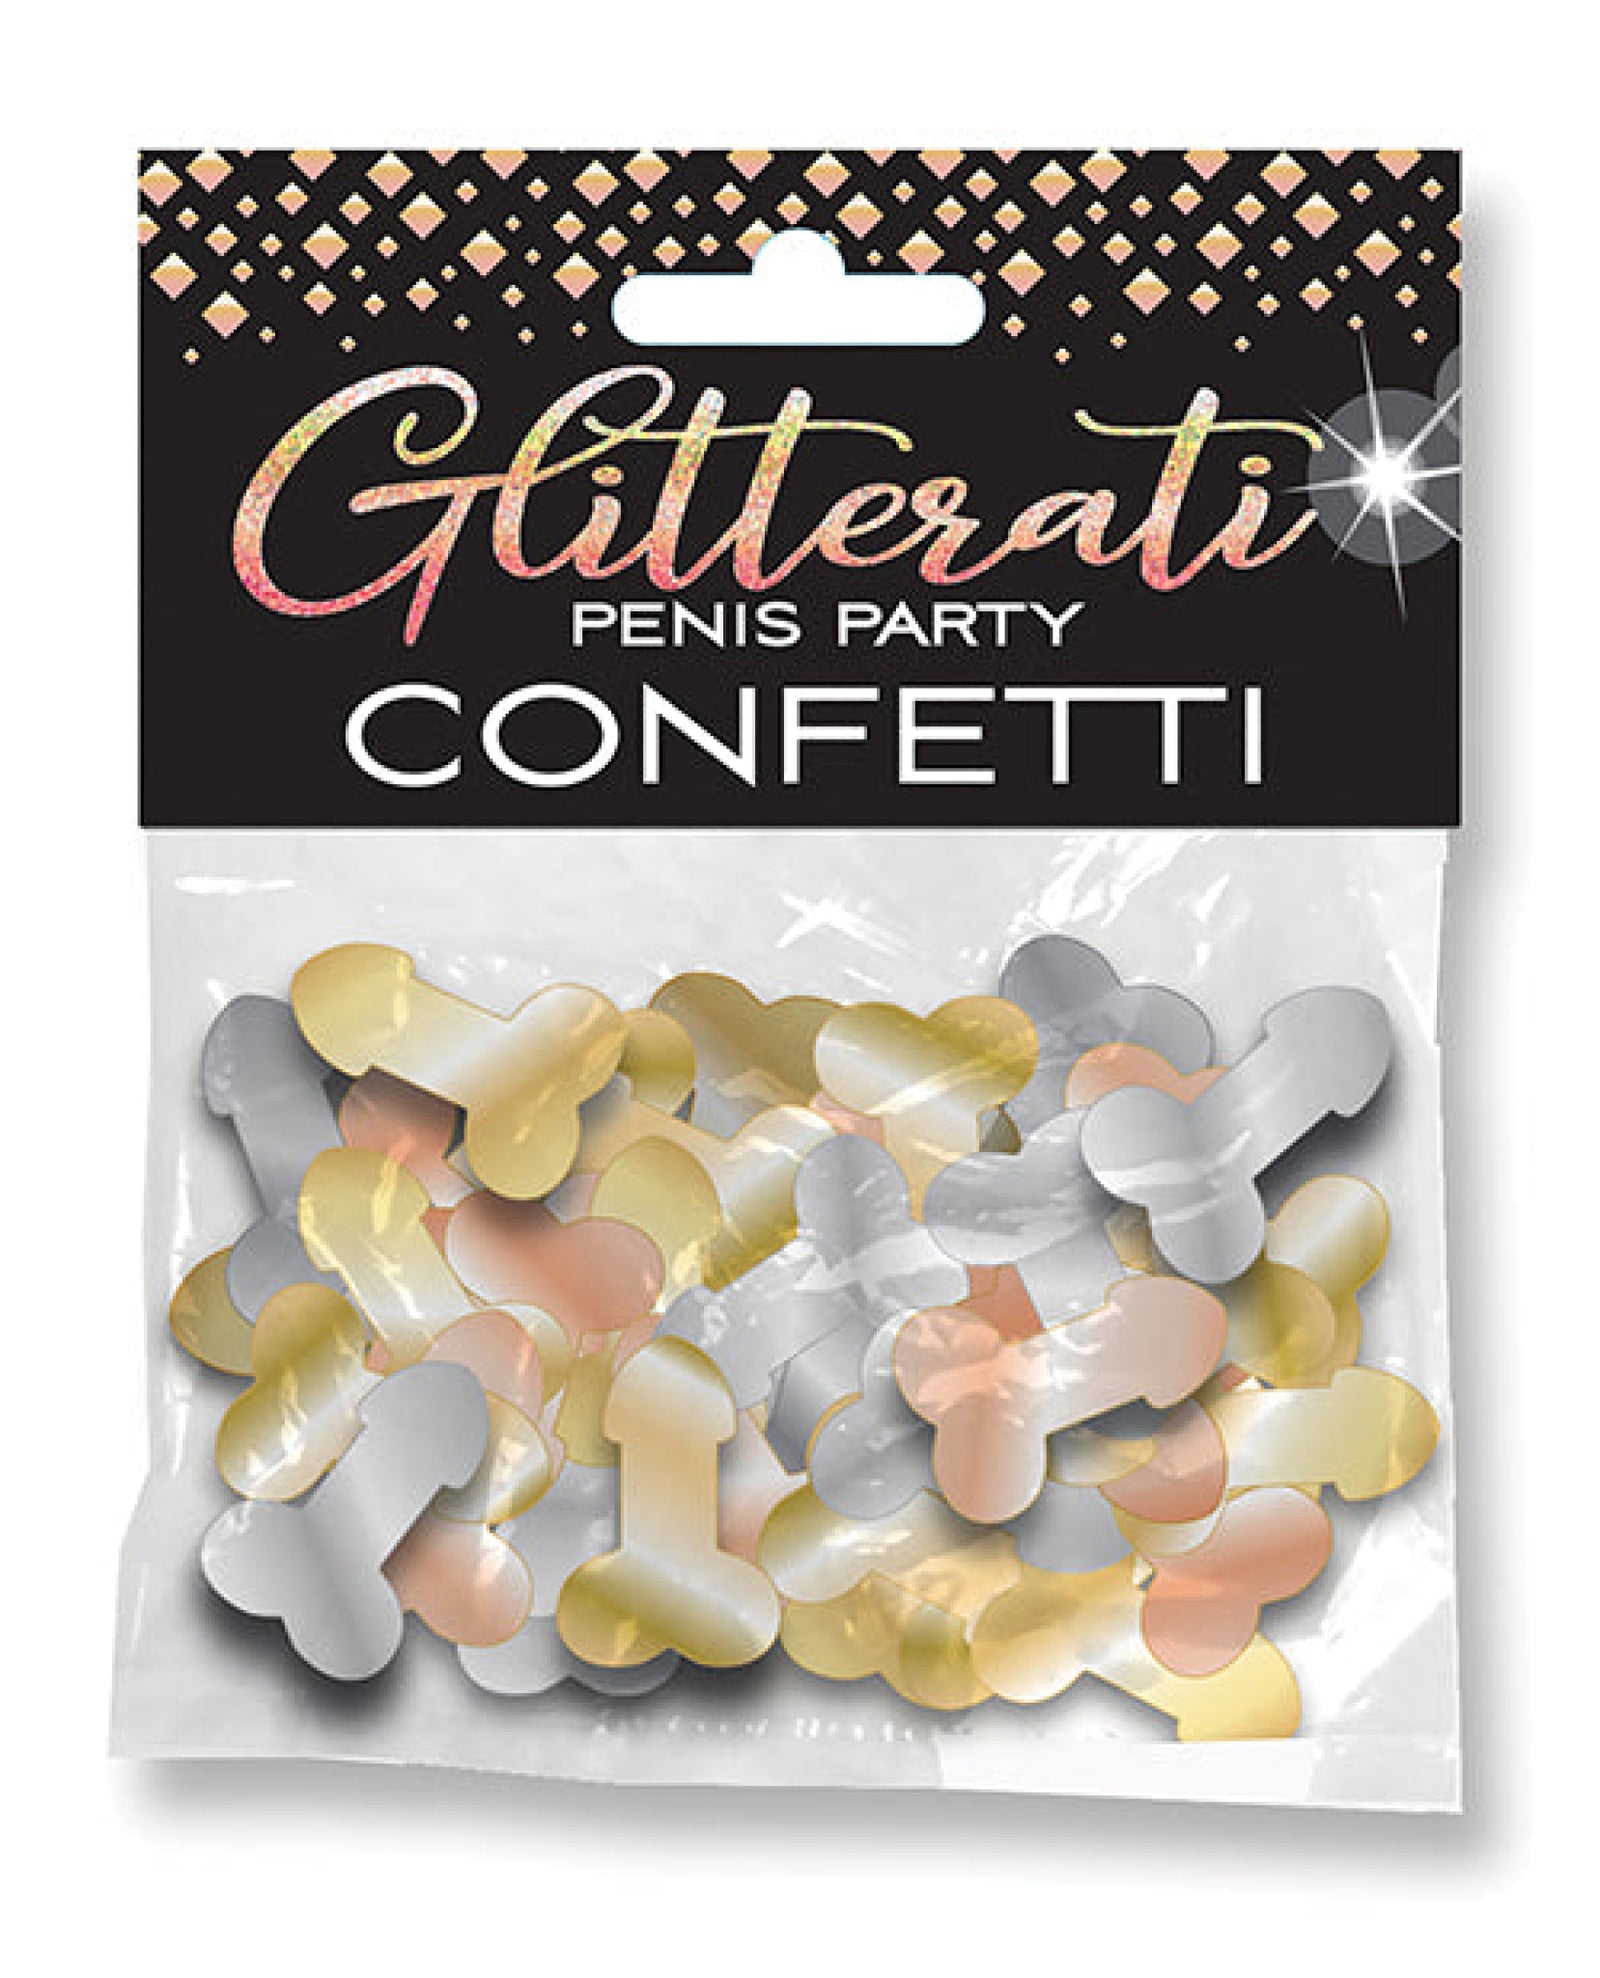 Glitterati Penis Party Confetti Little Genie